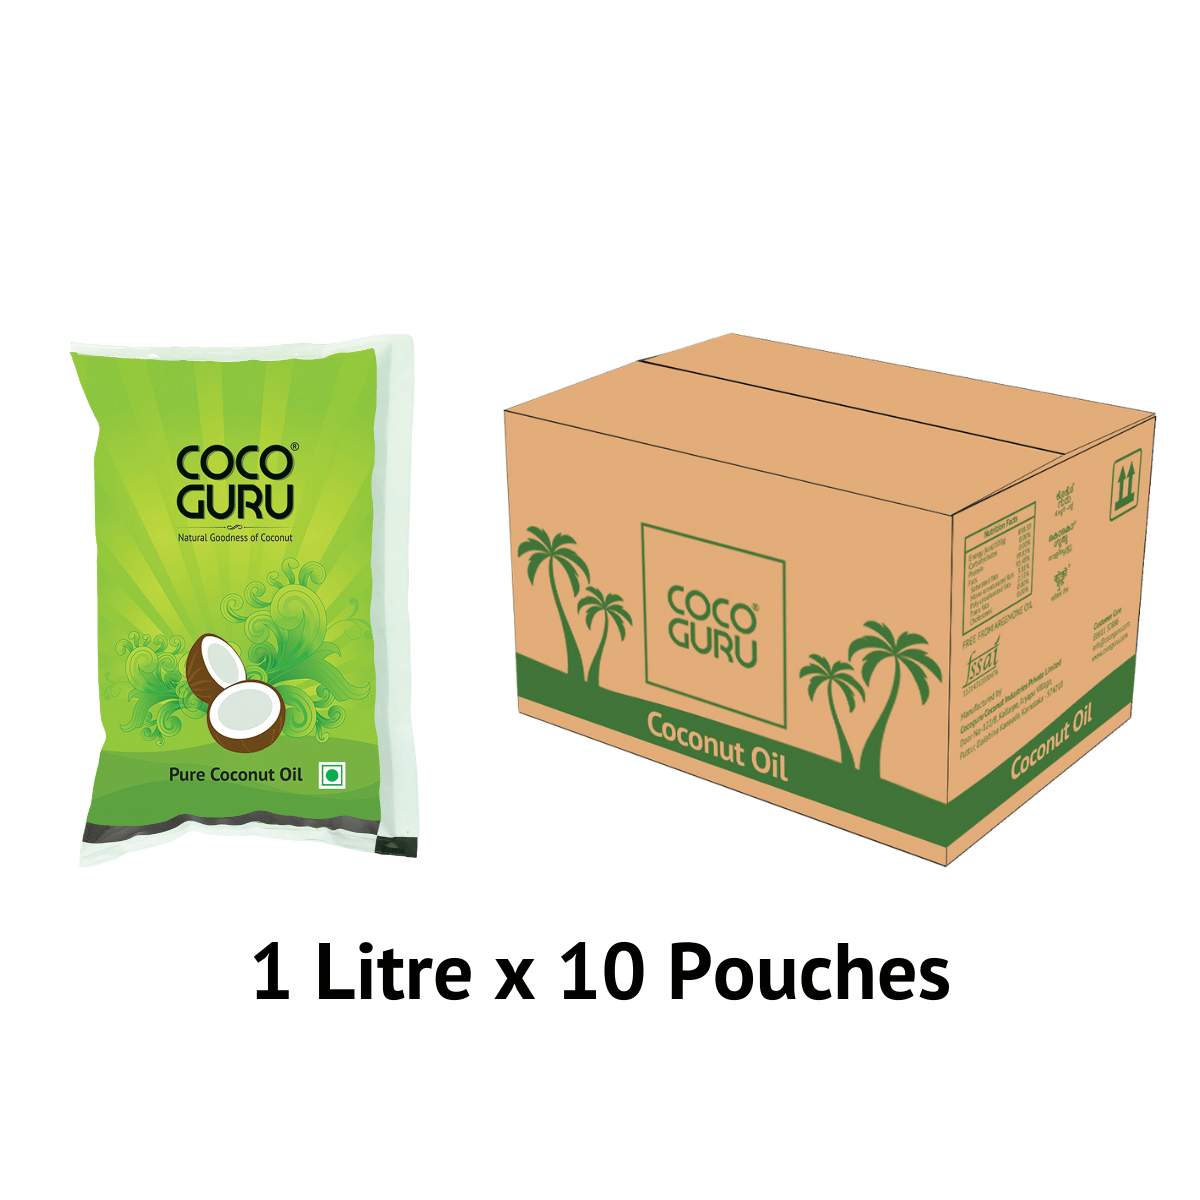 Cocoguru High Grade Coconut Oil in Pouch 1 Litre – 10 Litres Box